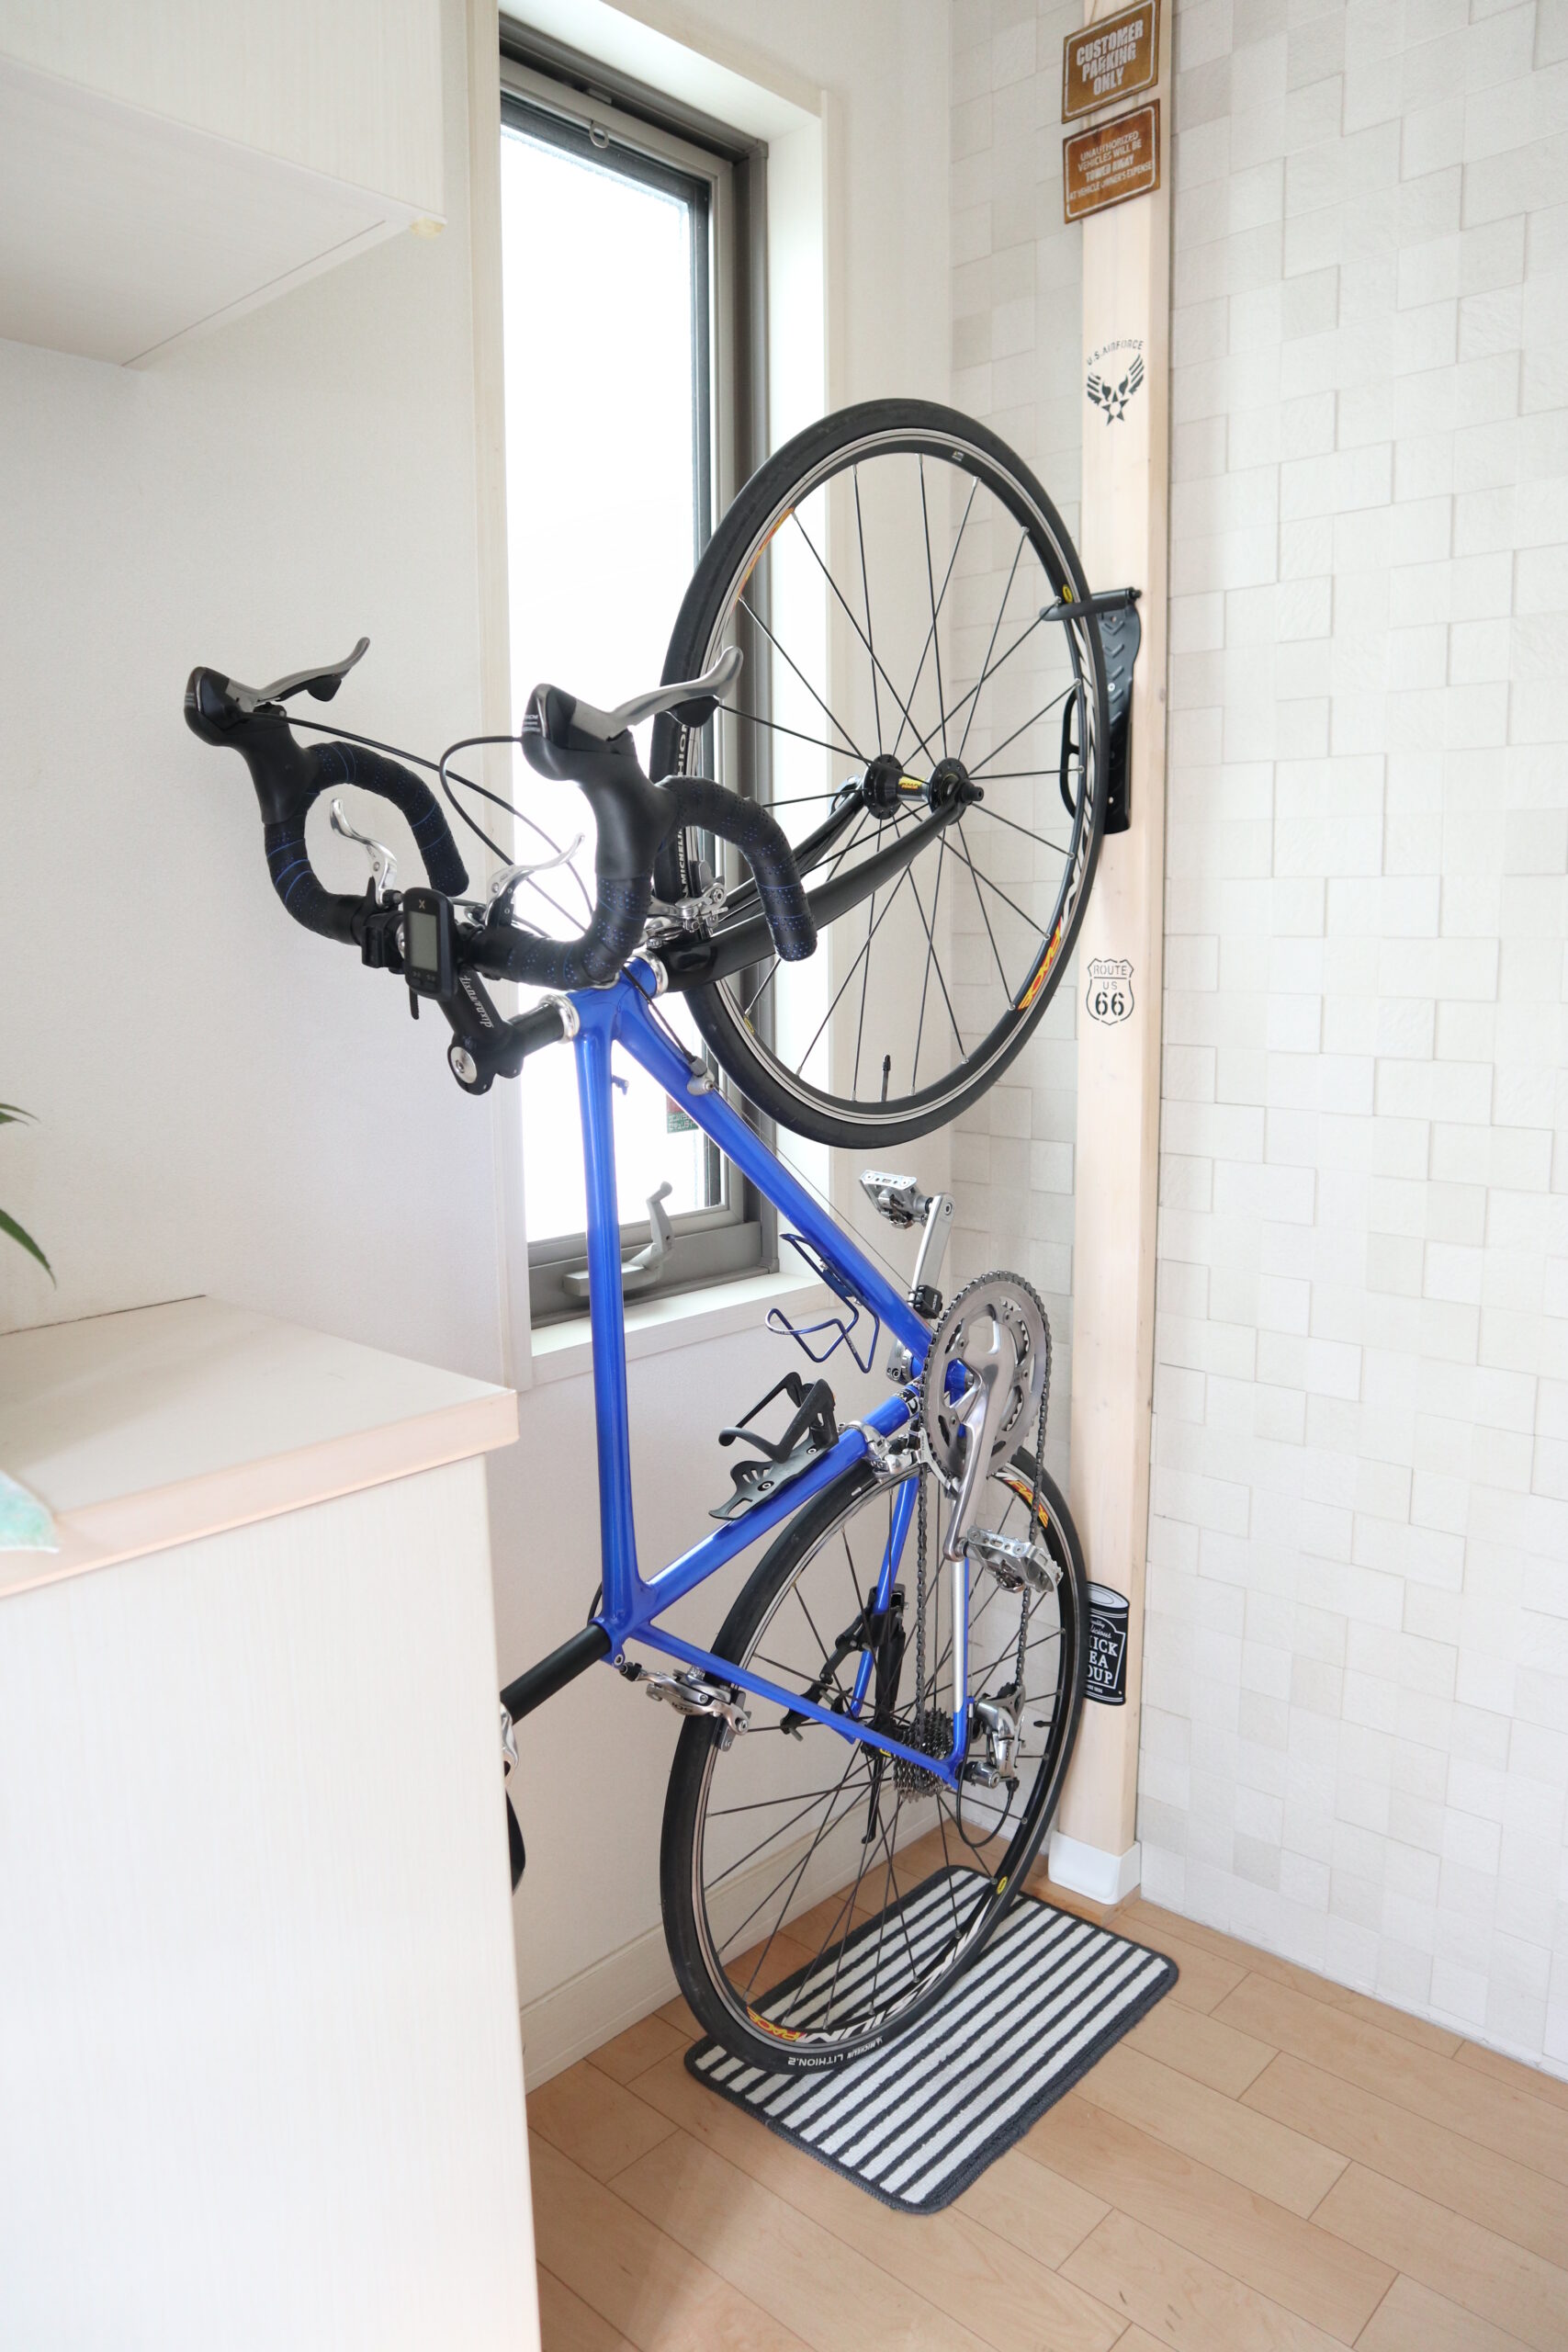 大好き 自転車壁掛けフック 自転車ハンガー バイクハンガー バイクスタンド 自転車ディスプレイ 壁 ディスプレイ ラック 自転車ホルダー  自転車スタンド 角度 調整 収納可能